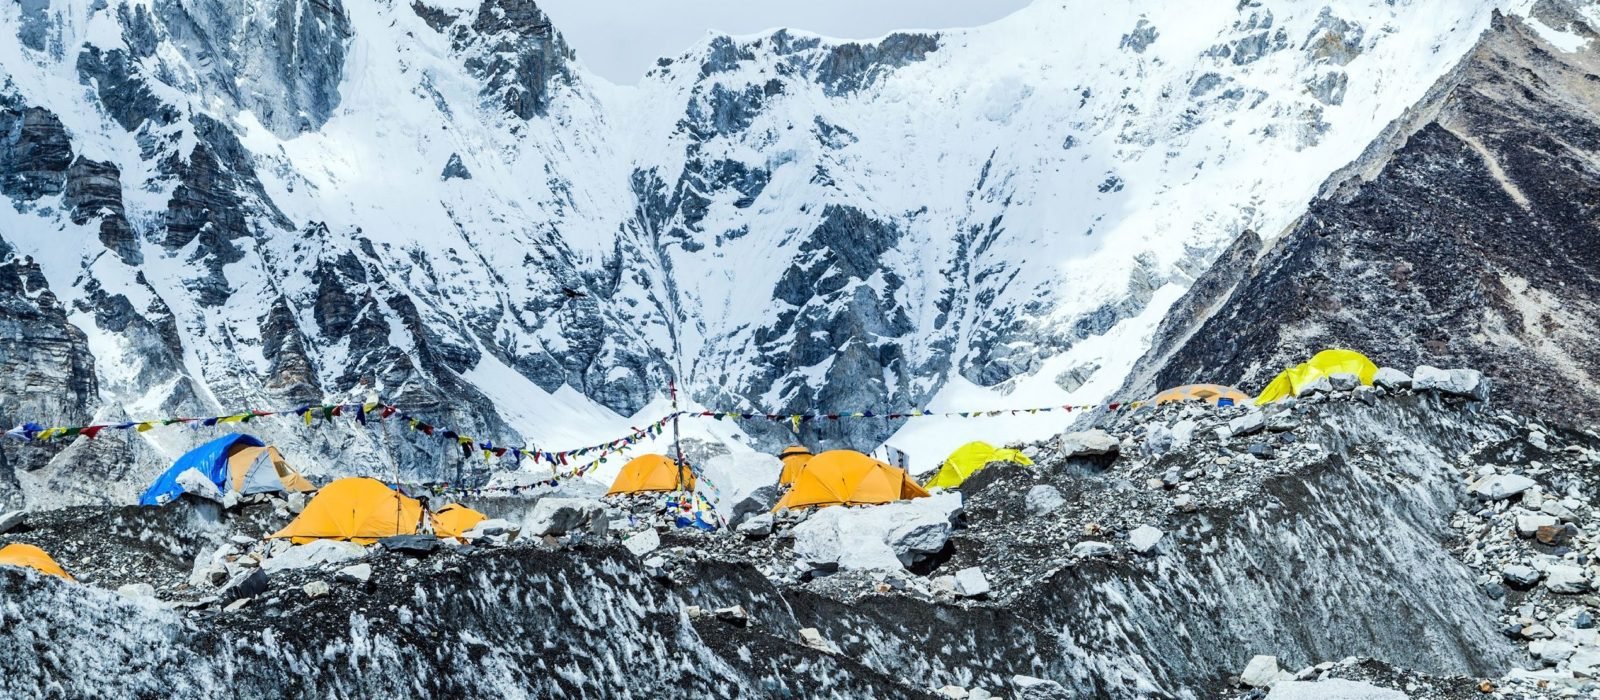 everest-base-camp-nepal